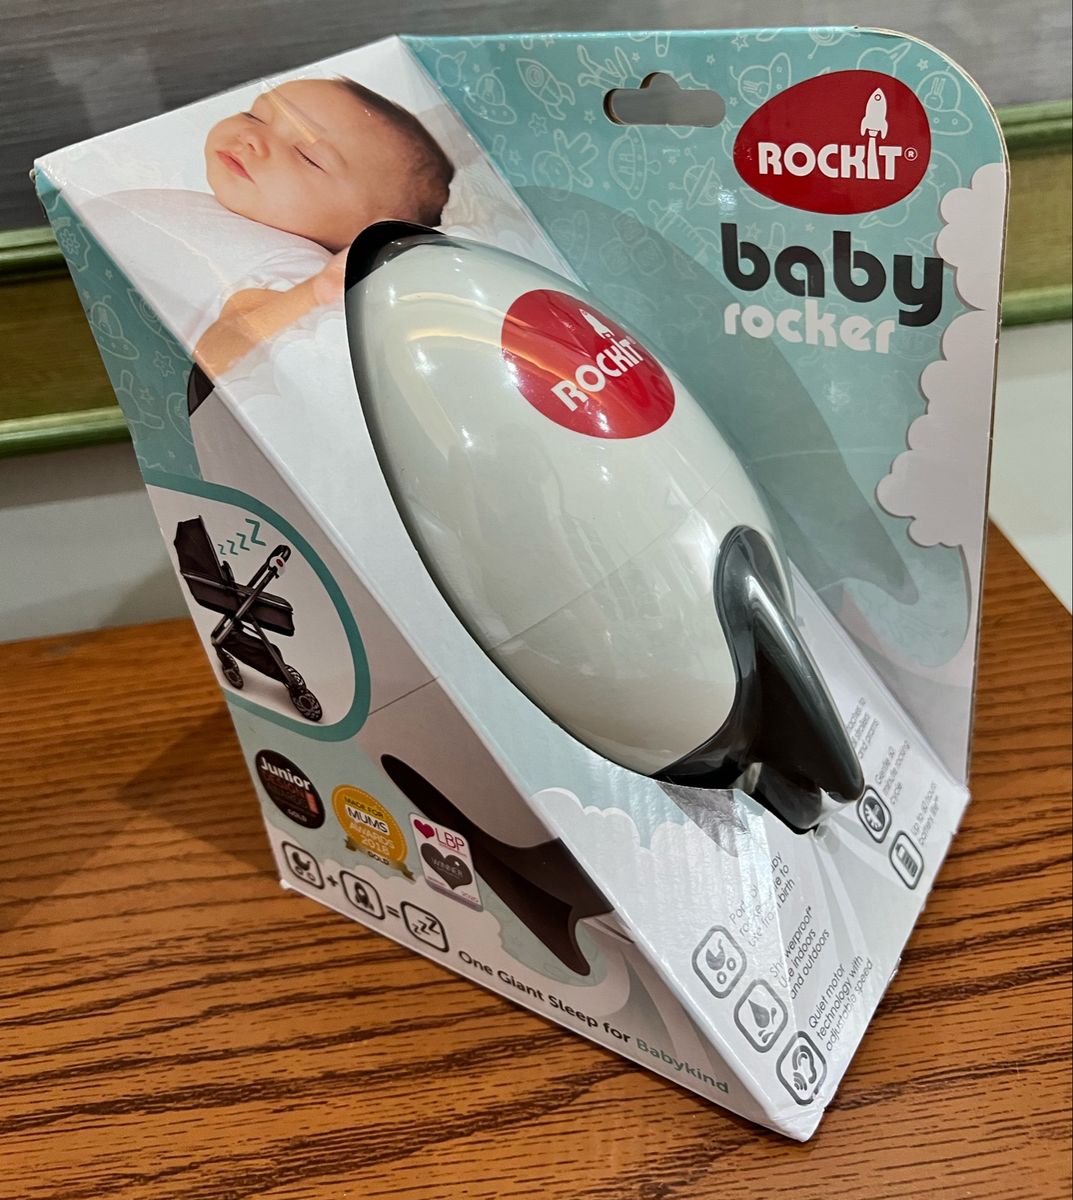 Balançador de Carrinho de Bebê Rockit - Baby Rocker, Item Infantil Rockit  Usado 80143007